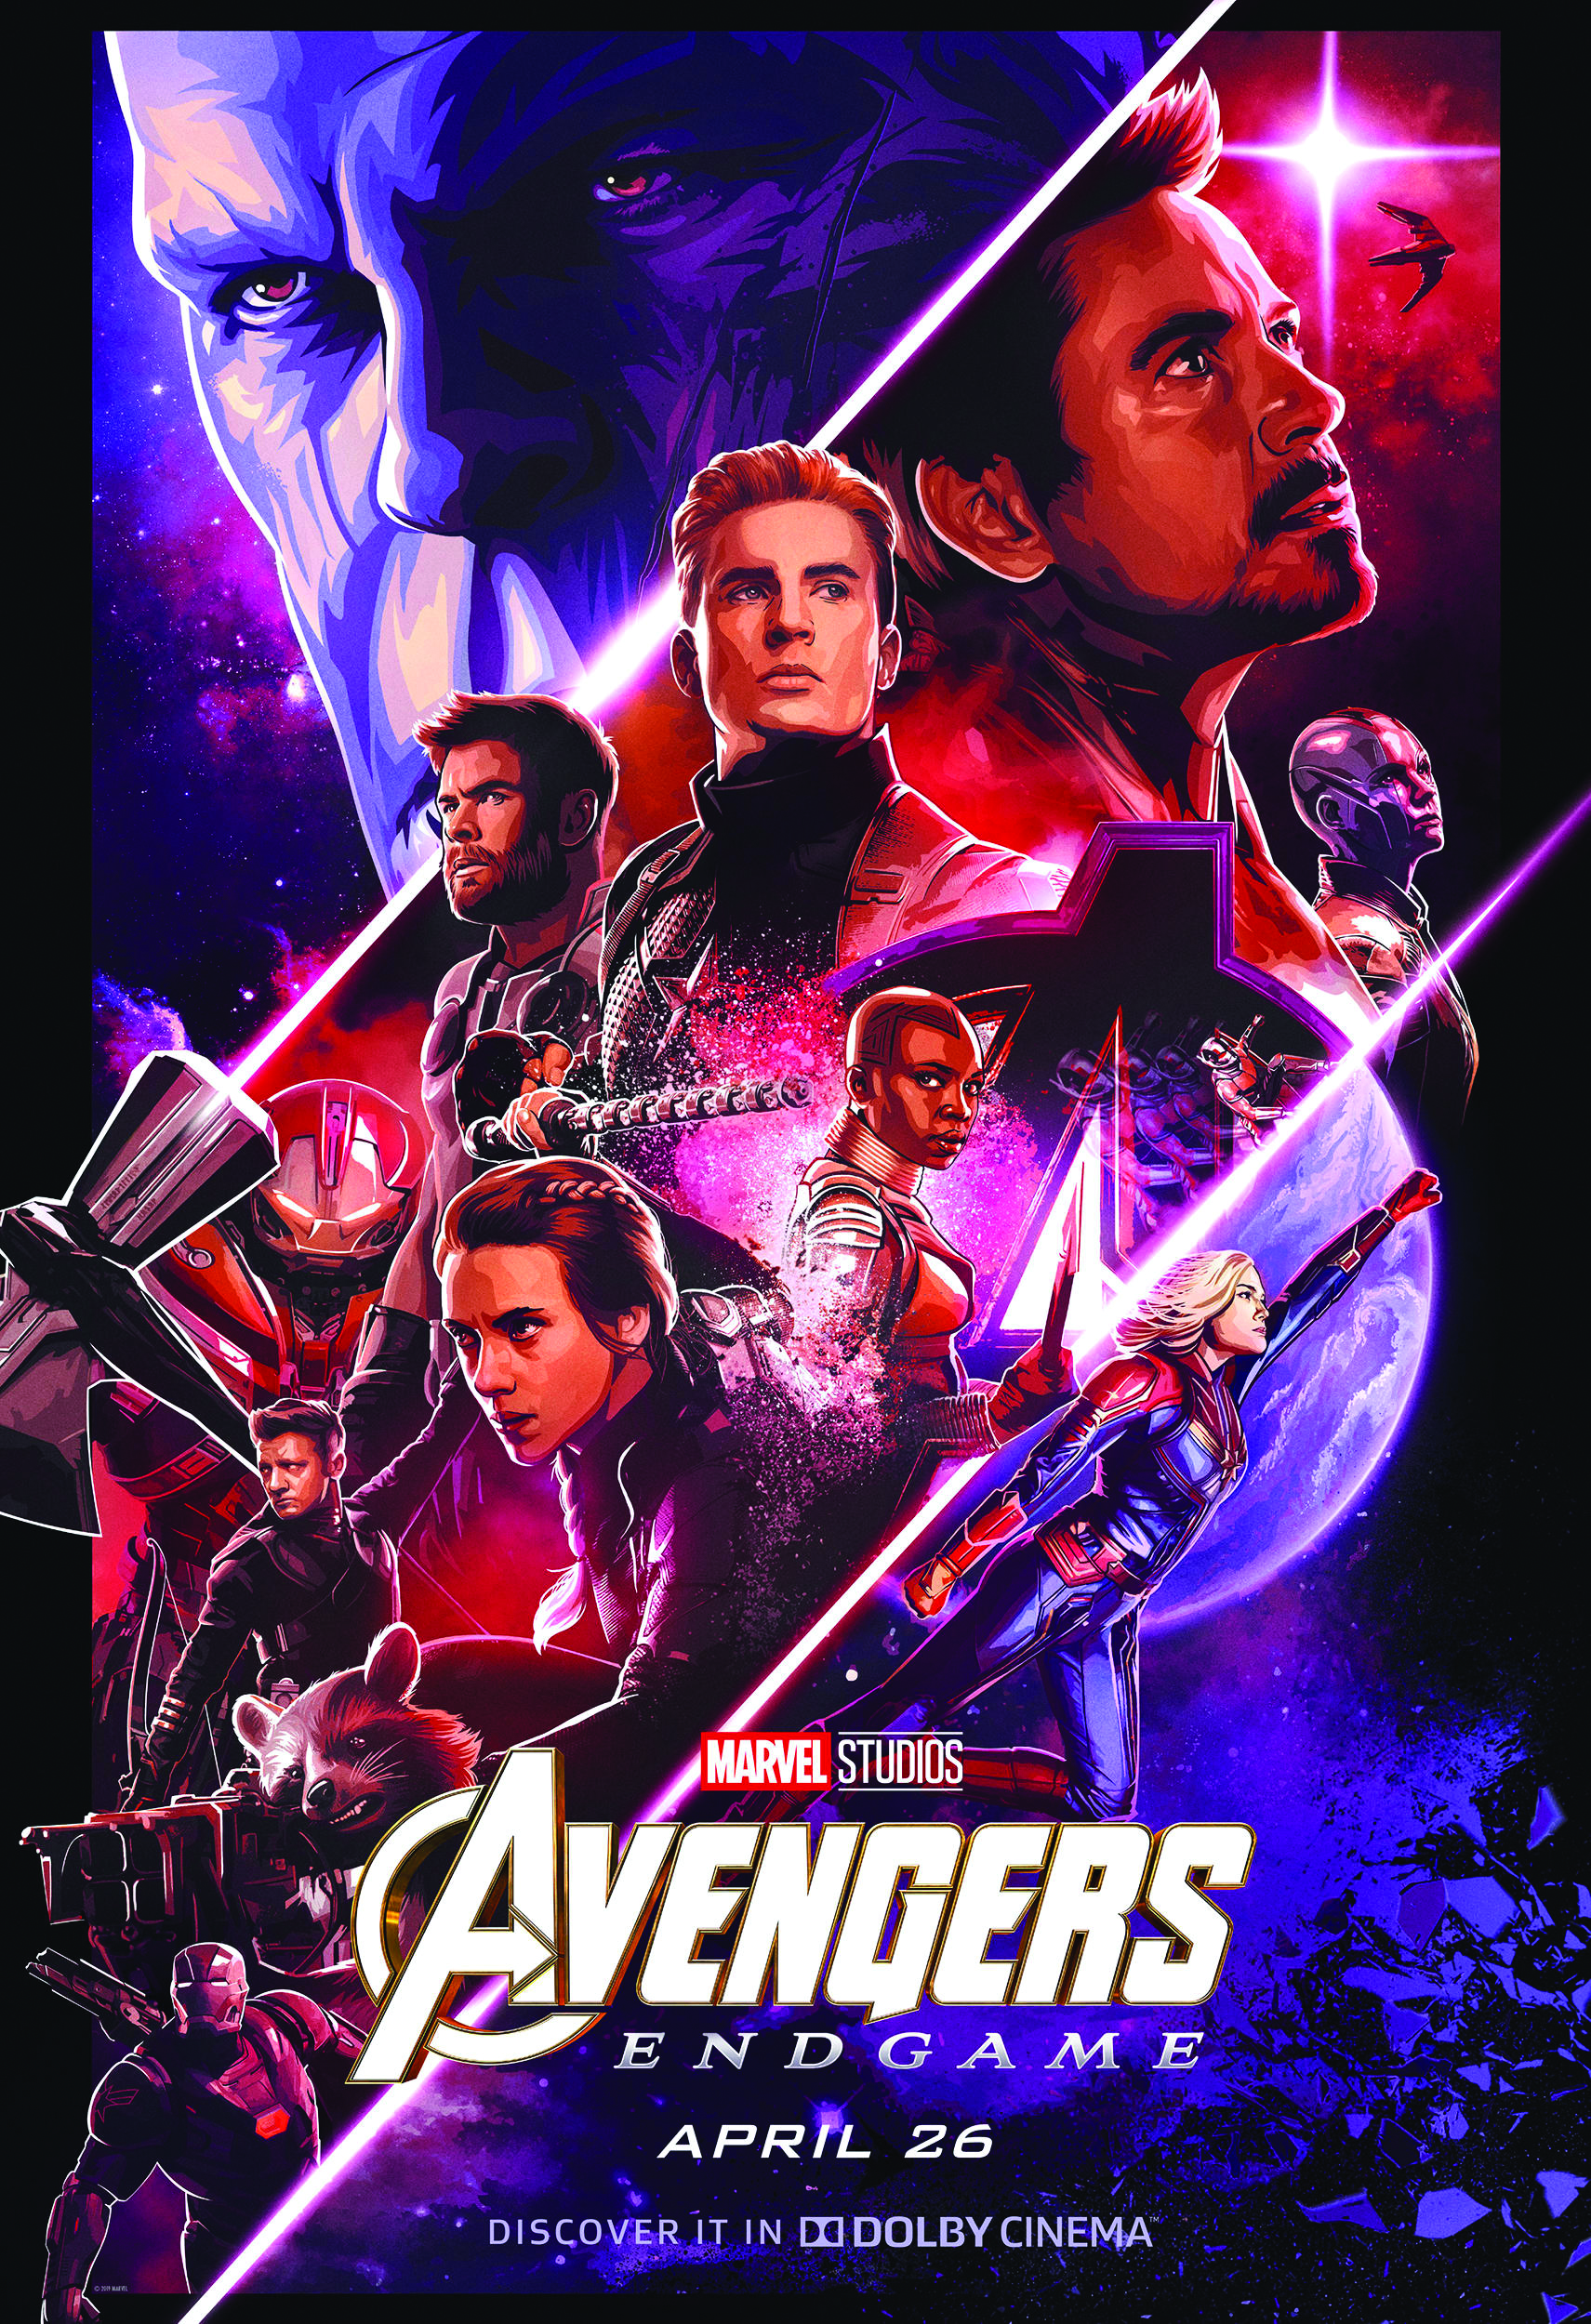 "Avengers: Endgame" movie poster.